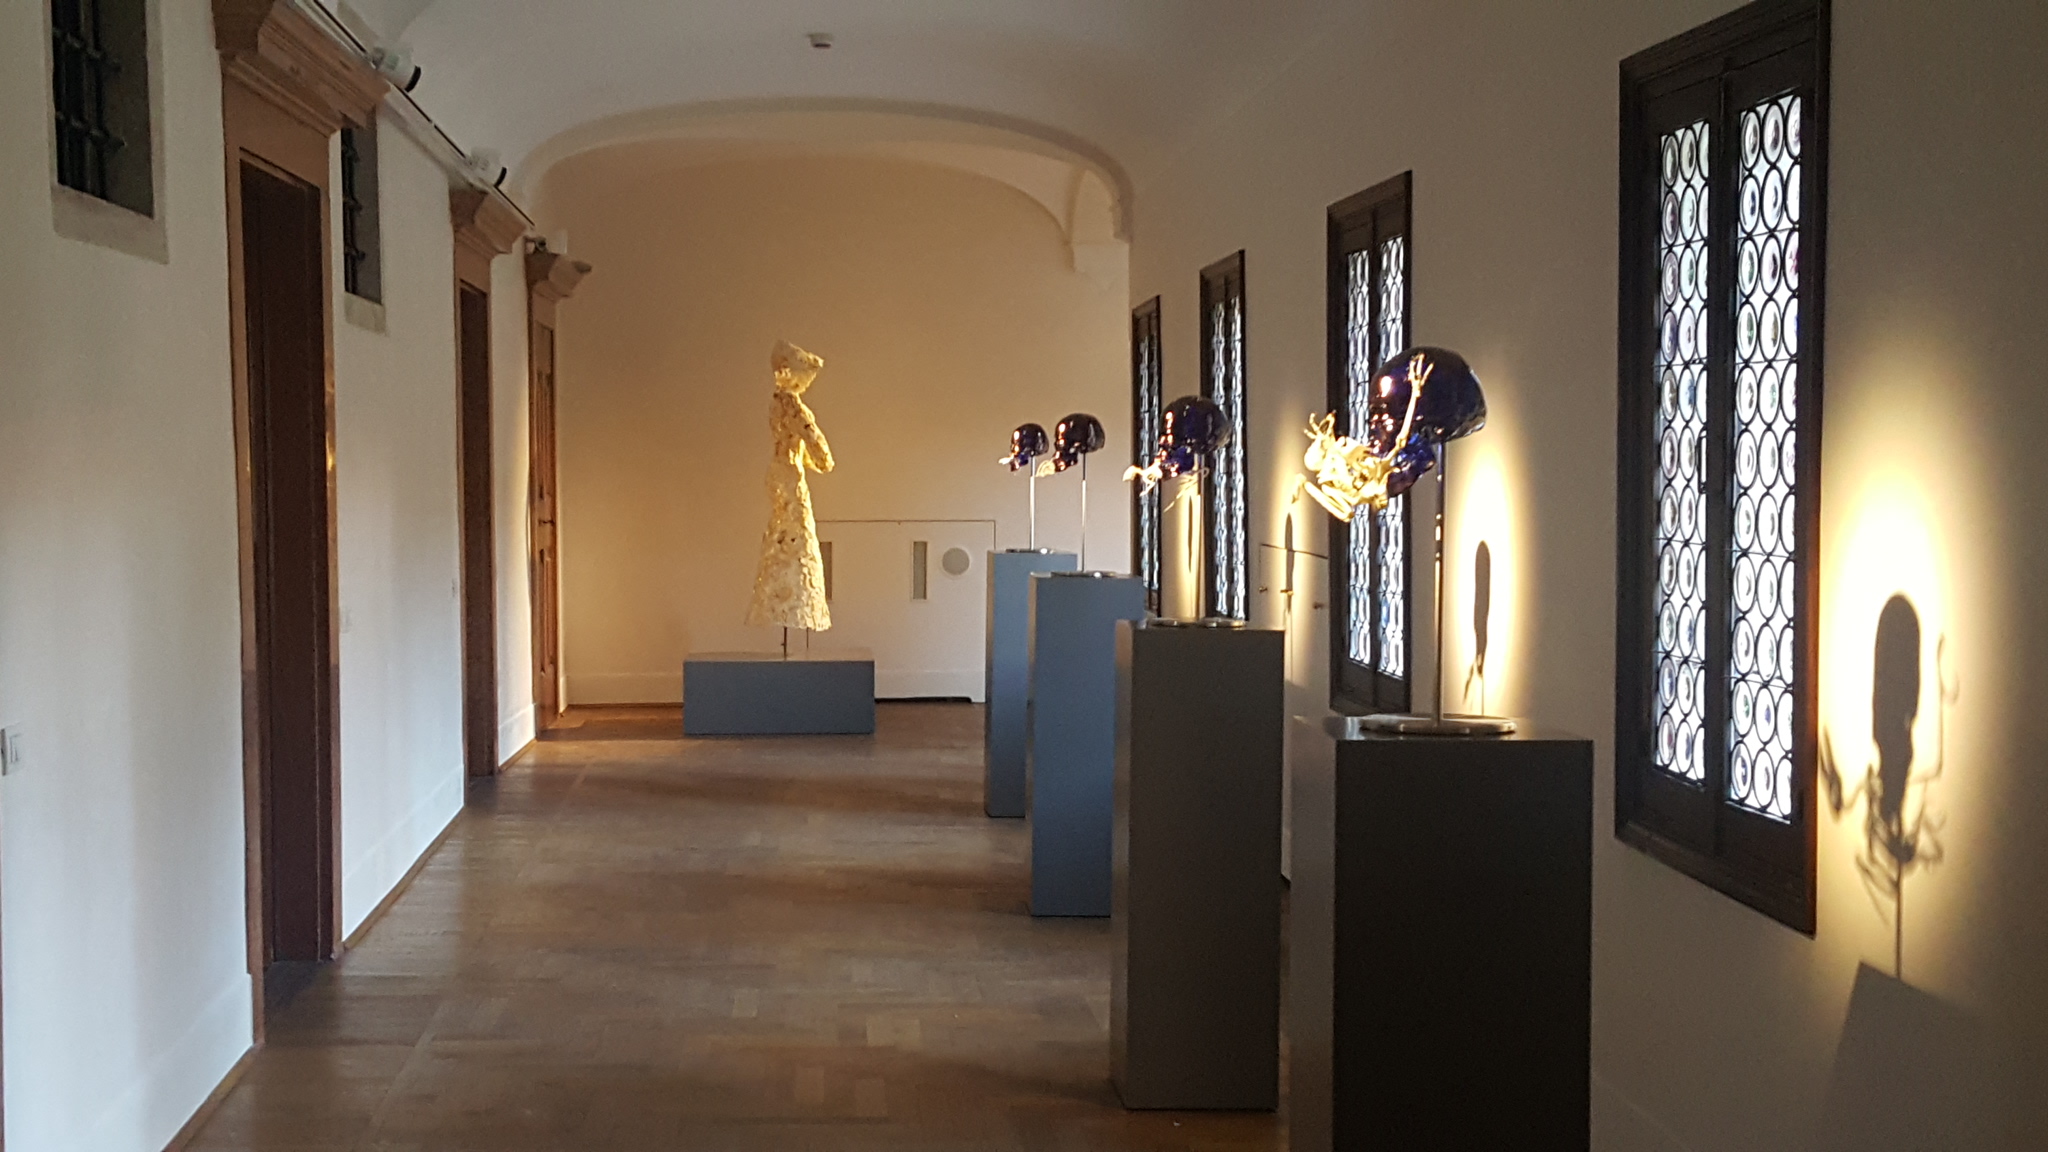 Jan Fabre. Glass and Bone Sculptures 1977-2017, exhibition view at Abbazia di San Gregorio, Venezia 2017